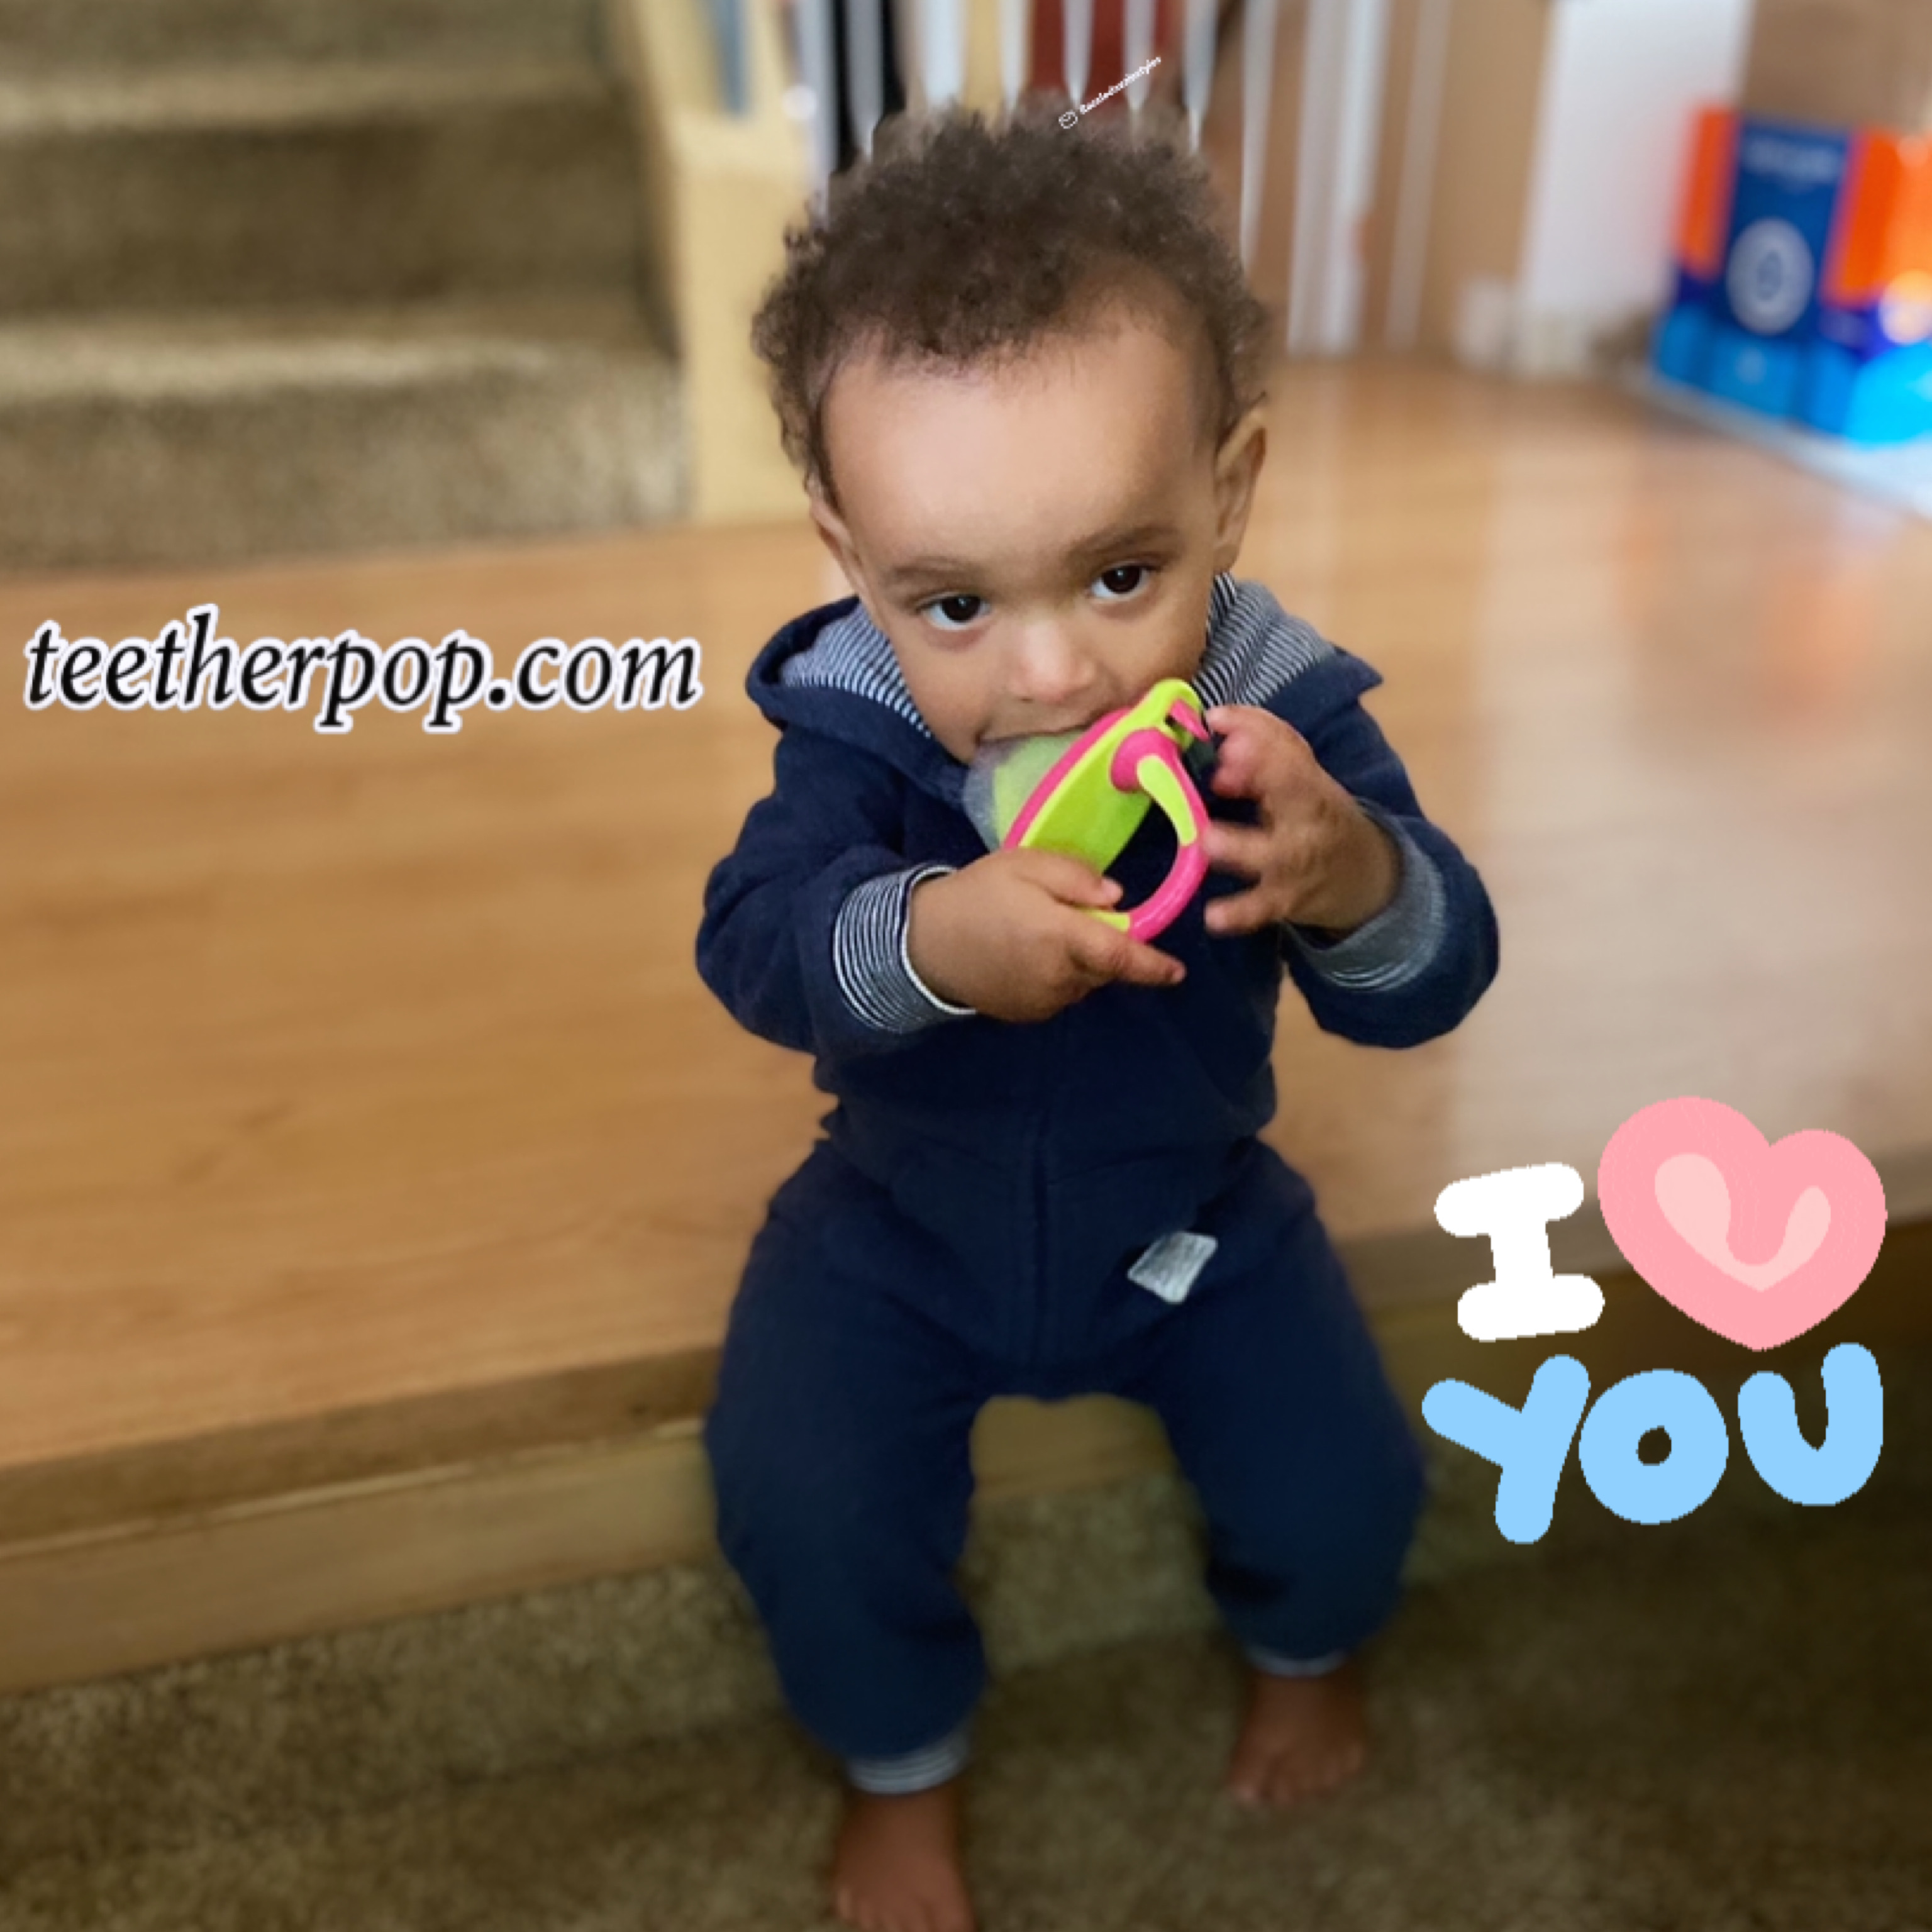 Teetherpop Holiday Gift Guide 2021 #babies #teething #sponsored